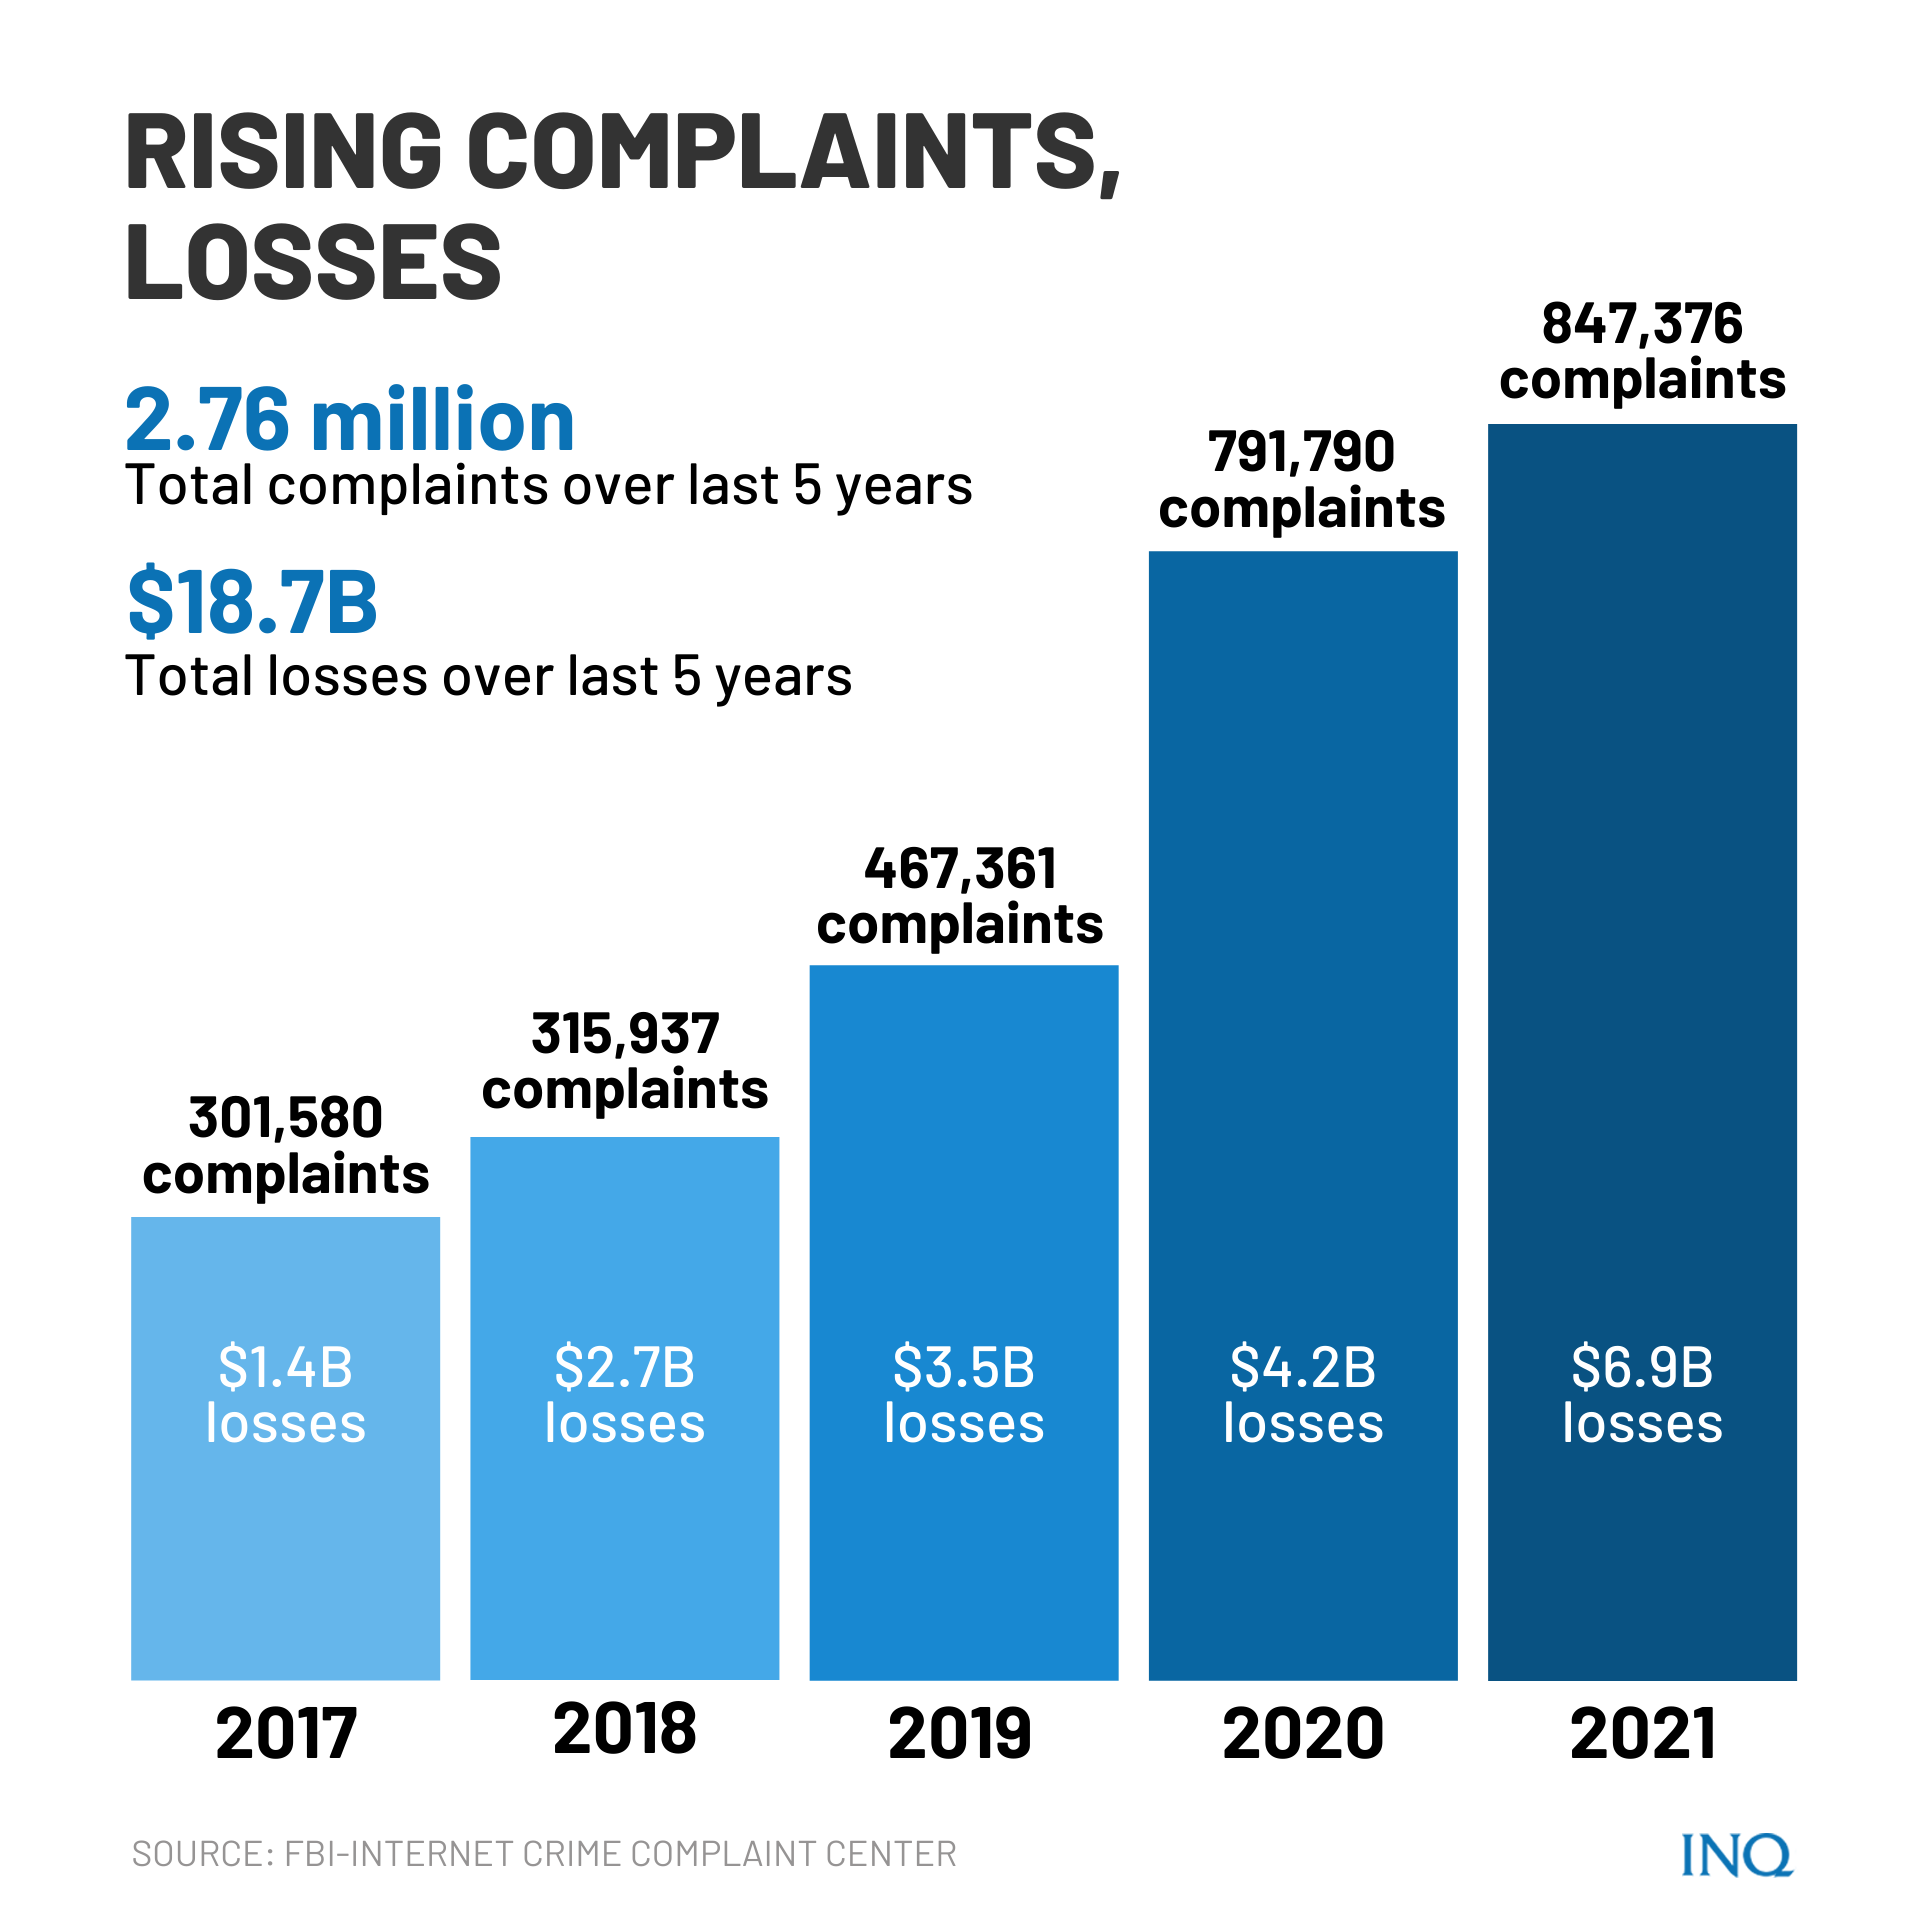 Rising complaints, losses